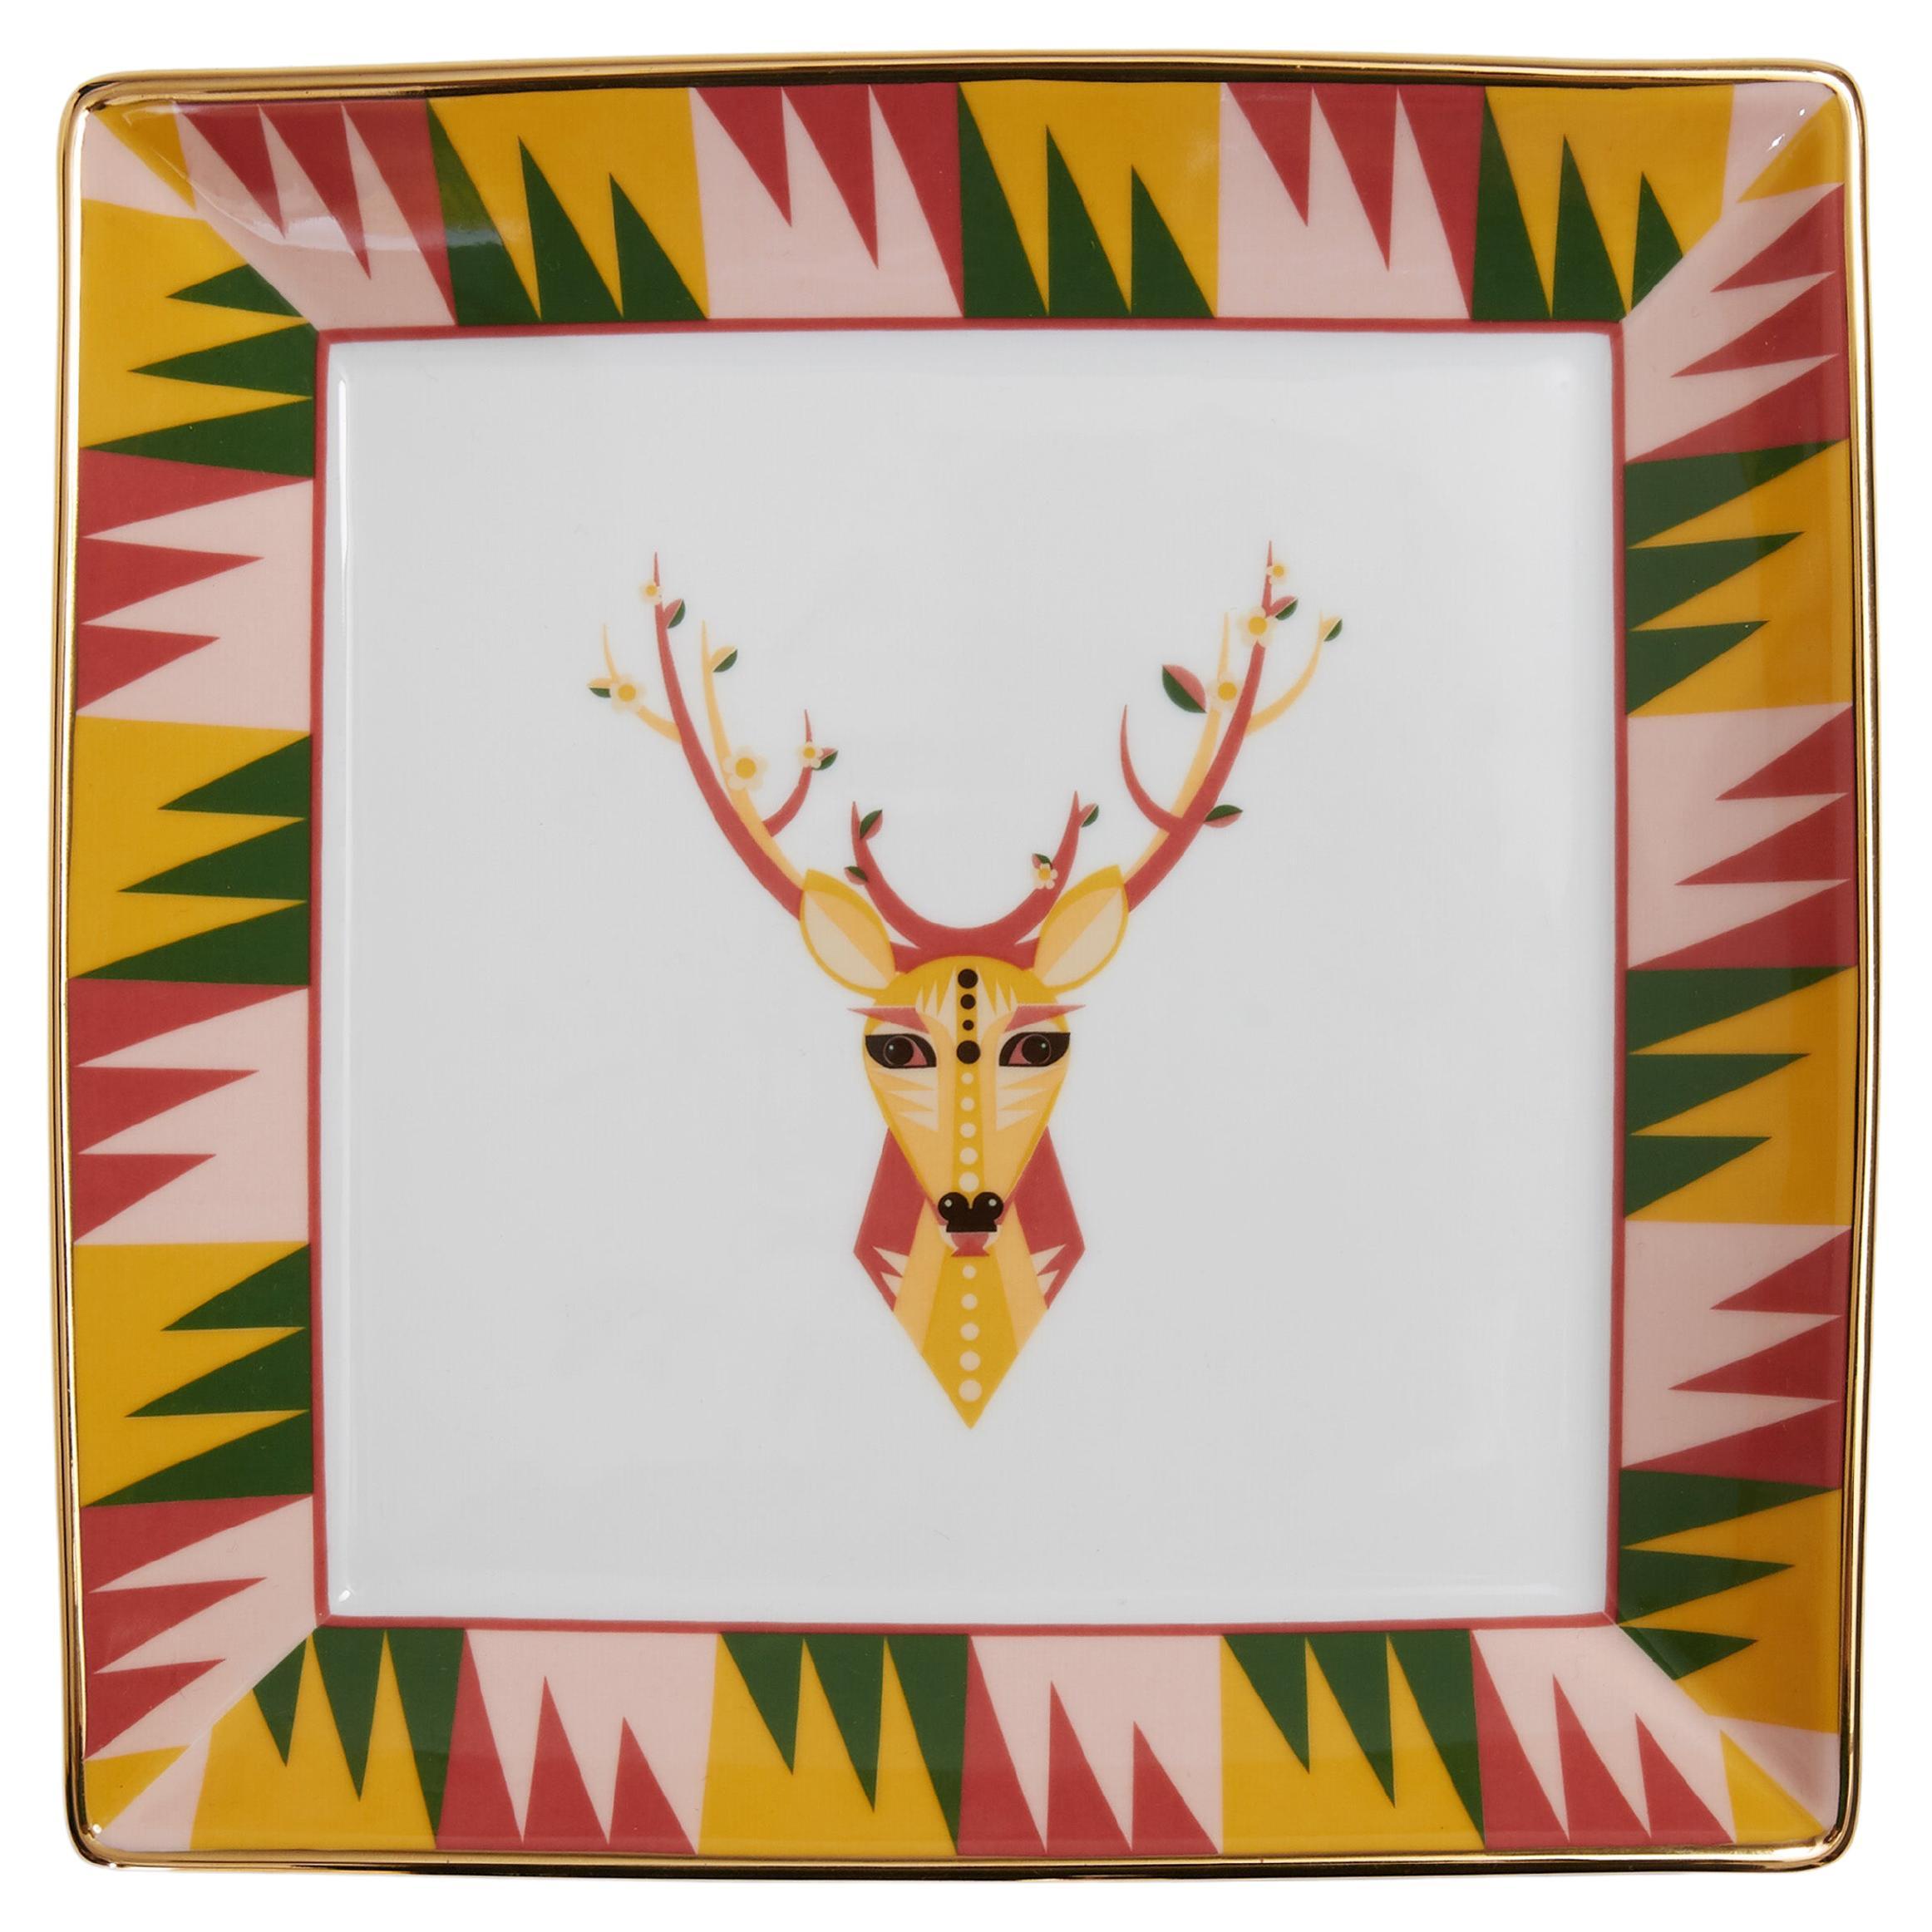 Trinket Tray Deer in Porcelain, Made in Italy by La DoubleJ